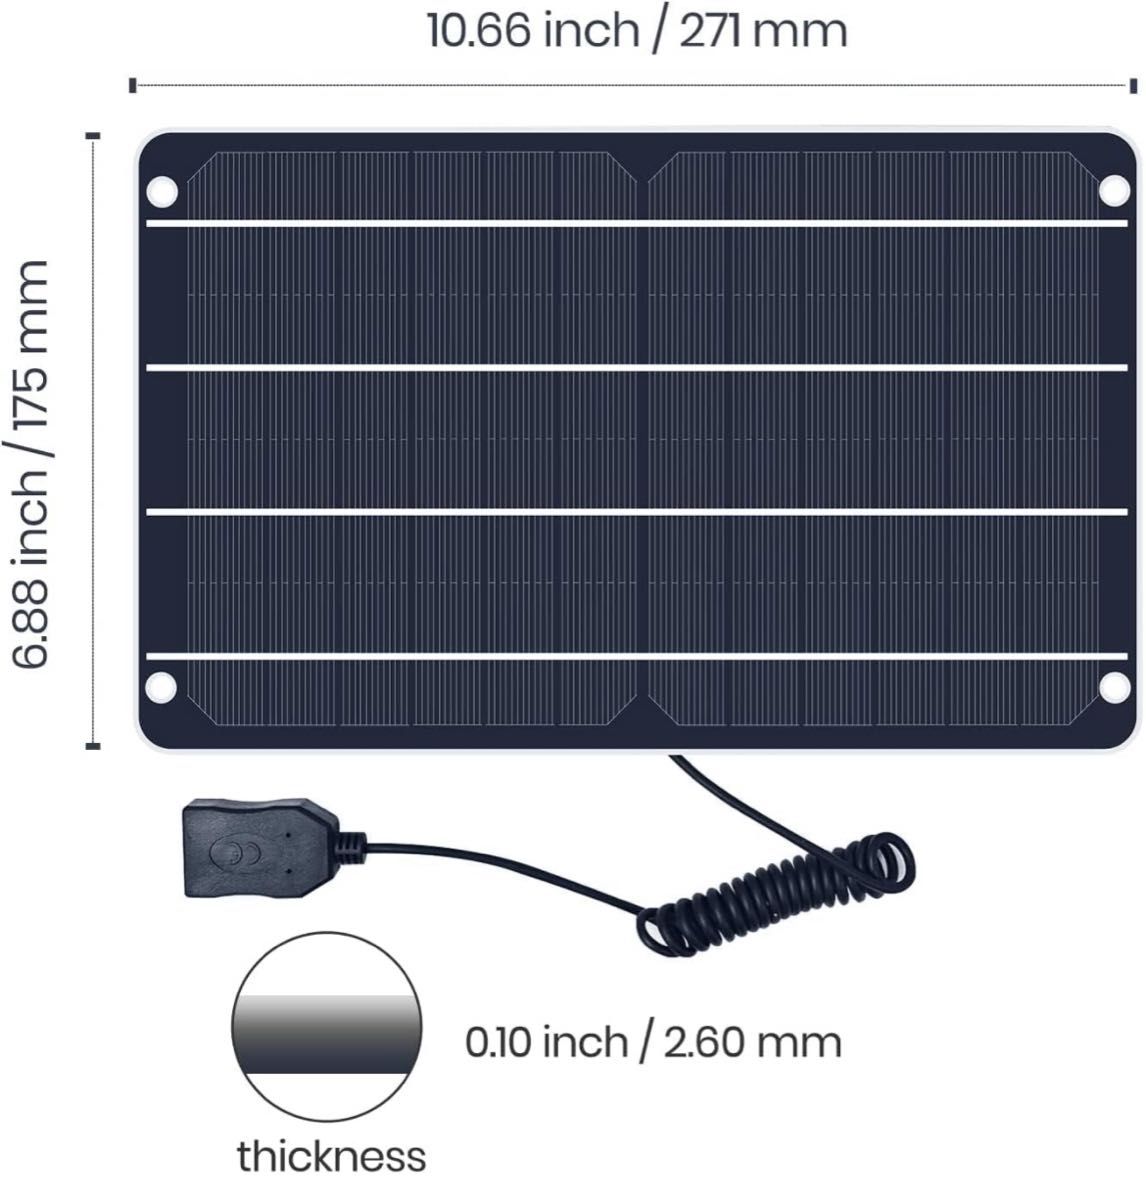 ソーラーパネル 6W 5V 高性能単結晶 usb超薄携帯型 屋外 防水 充電器